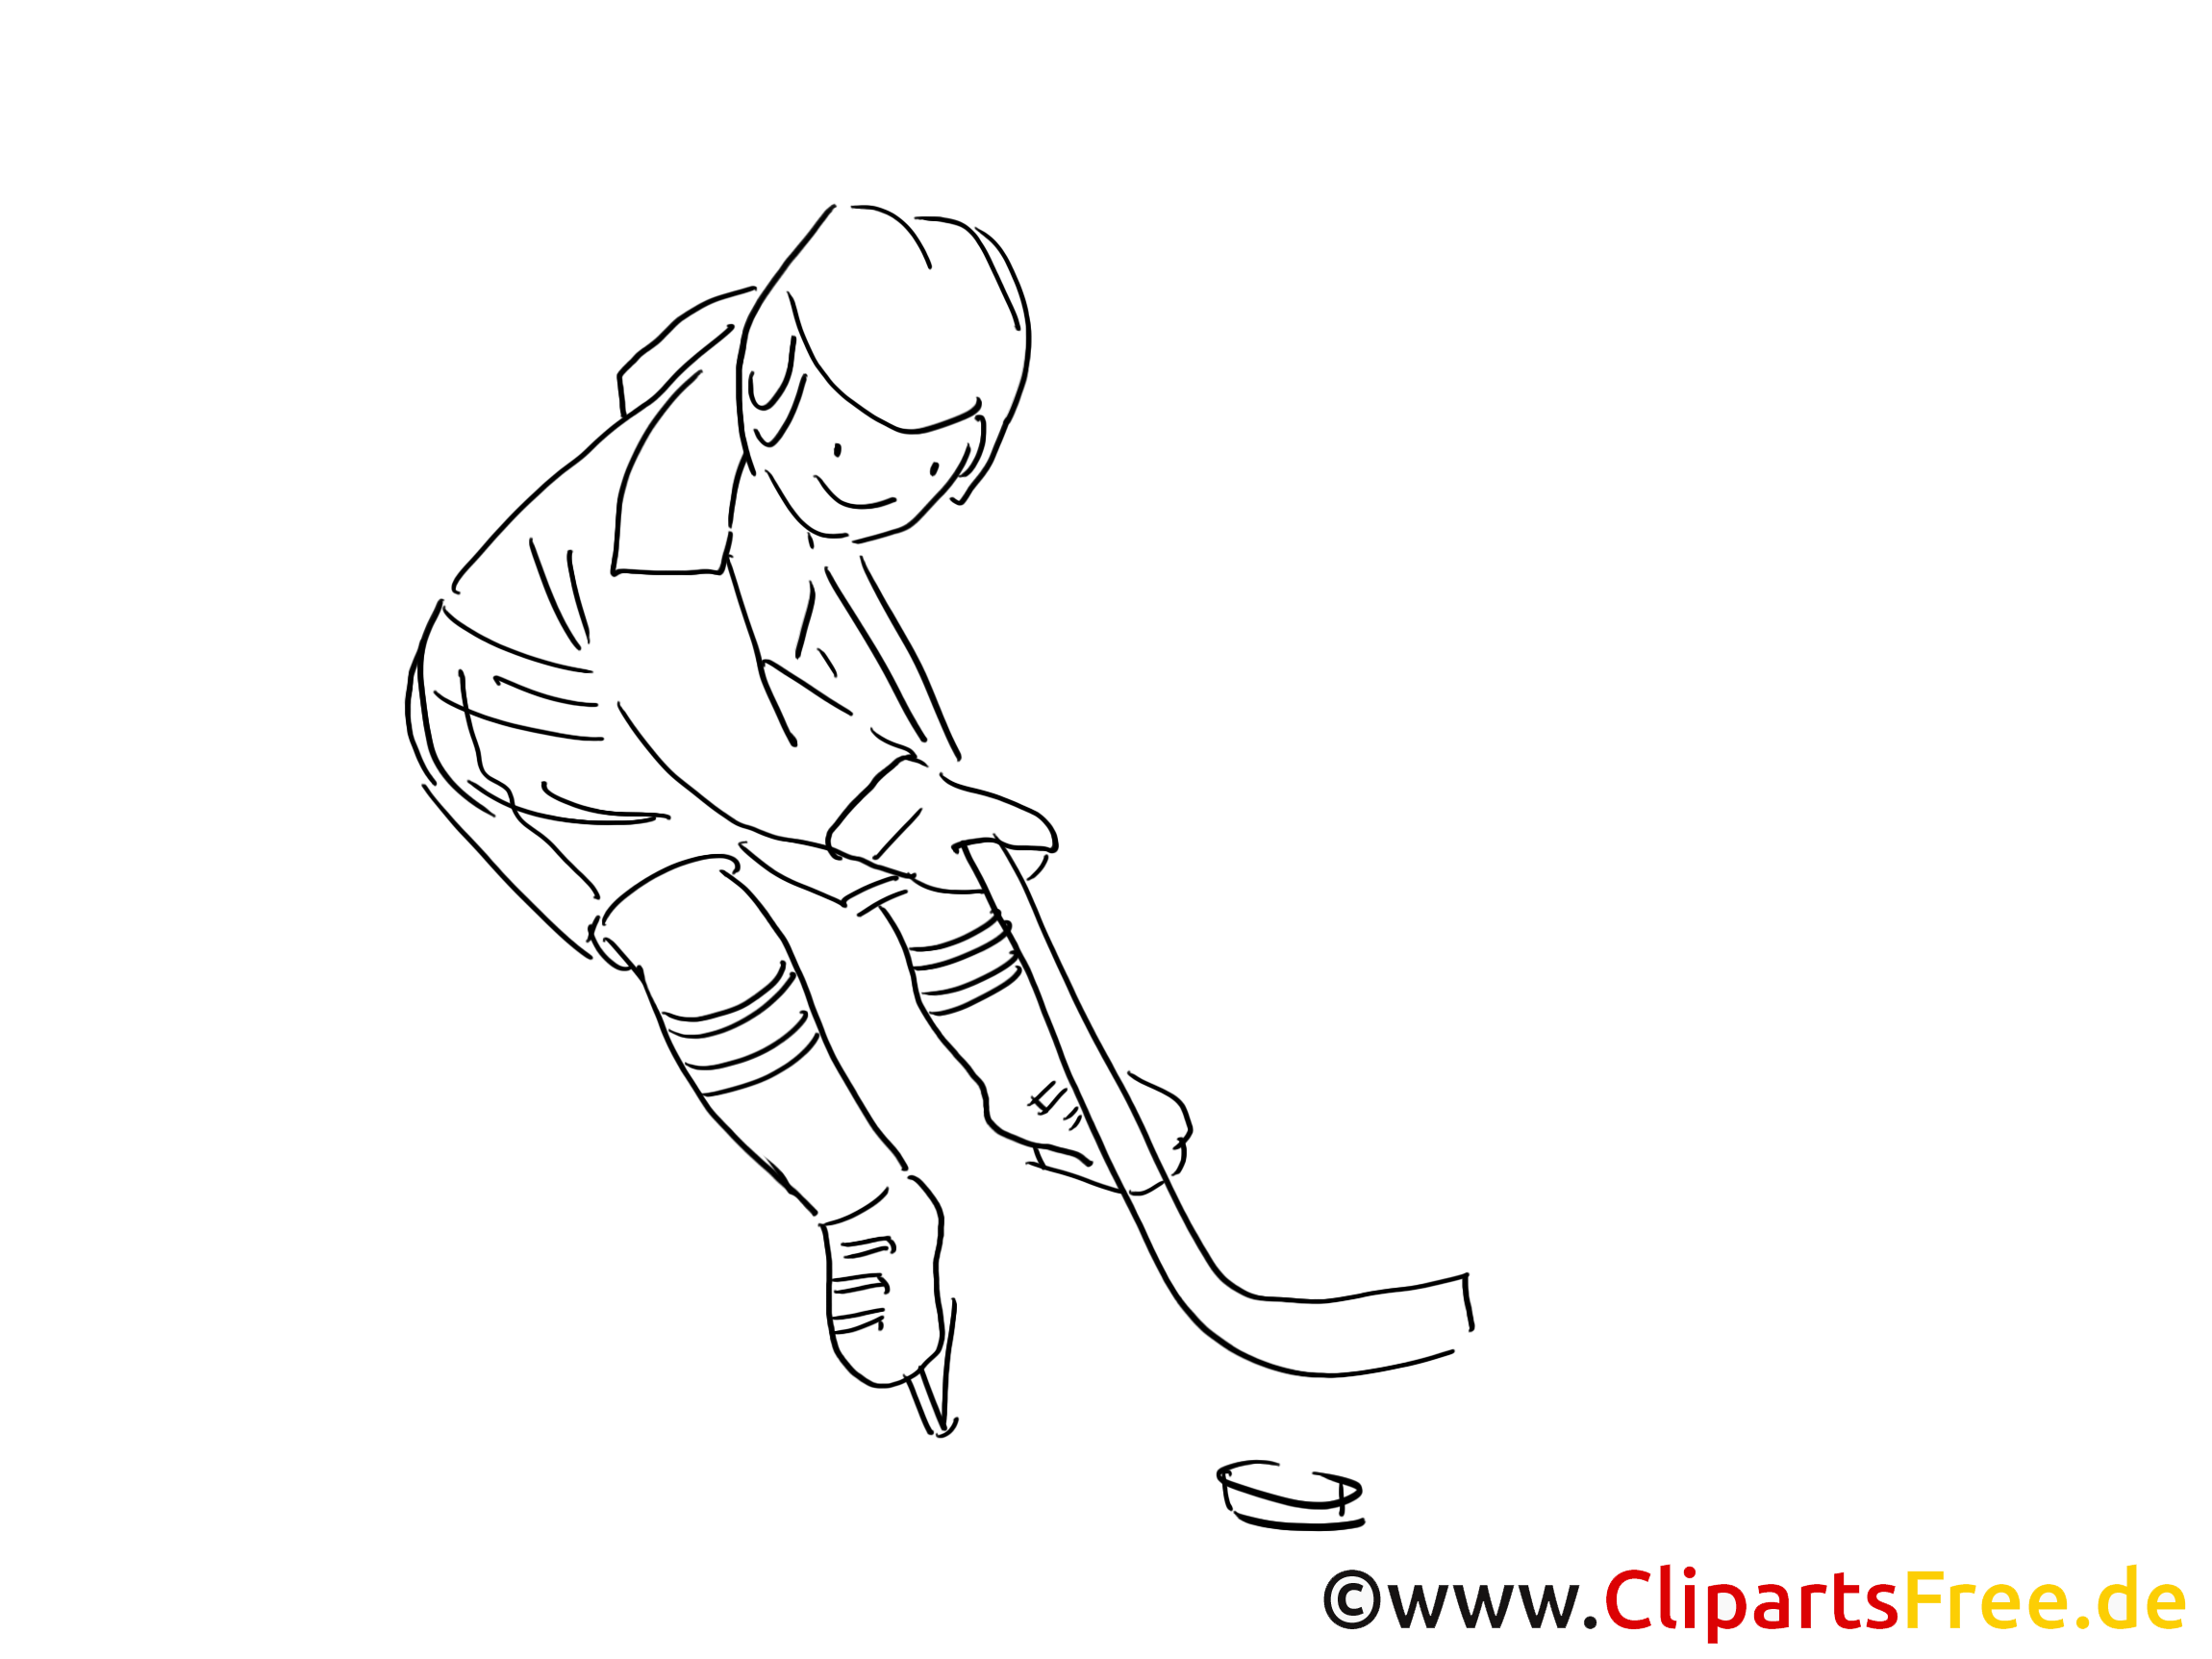 Bâton clip art – Hockey image à colorier